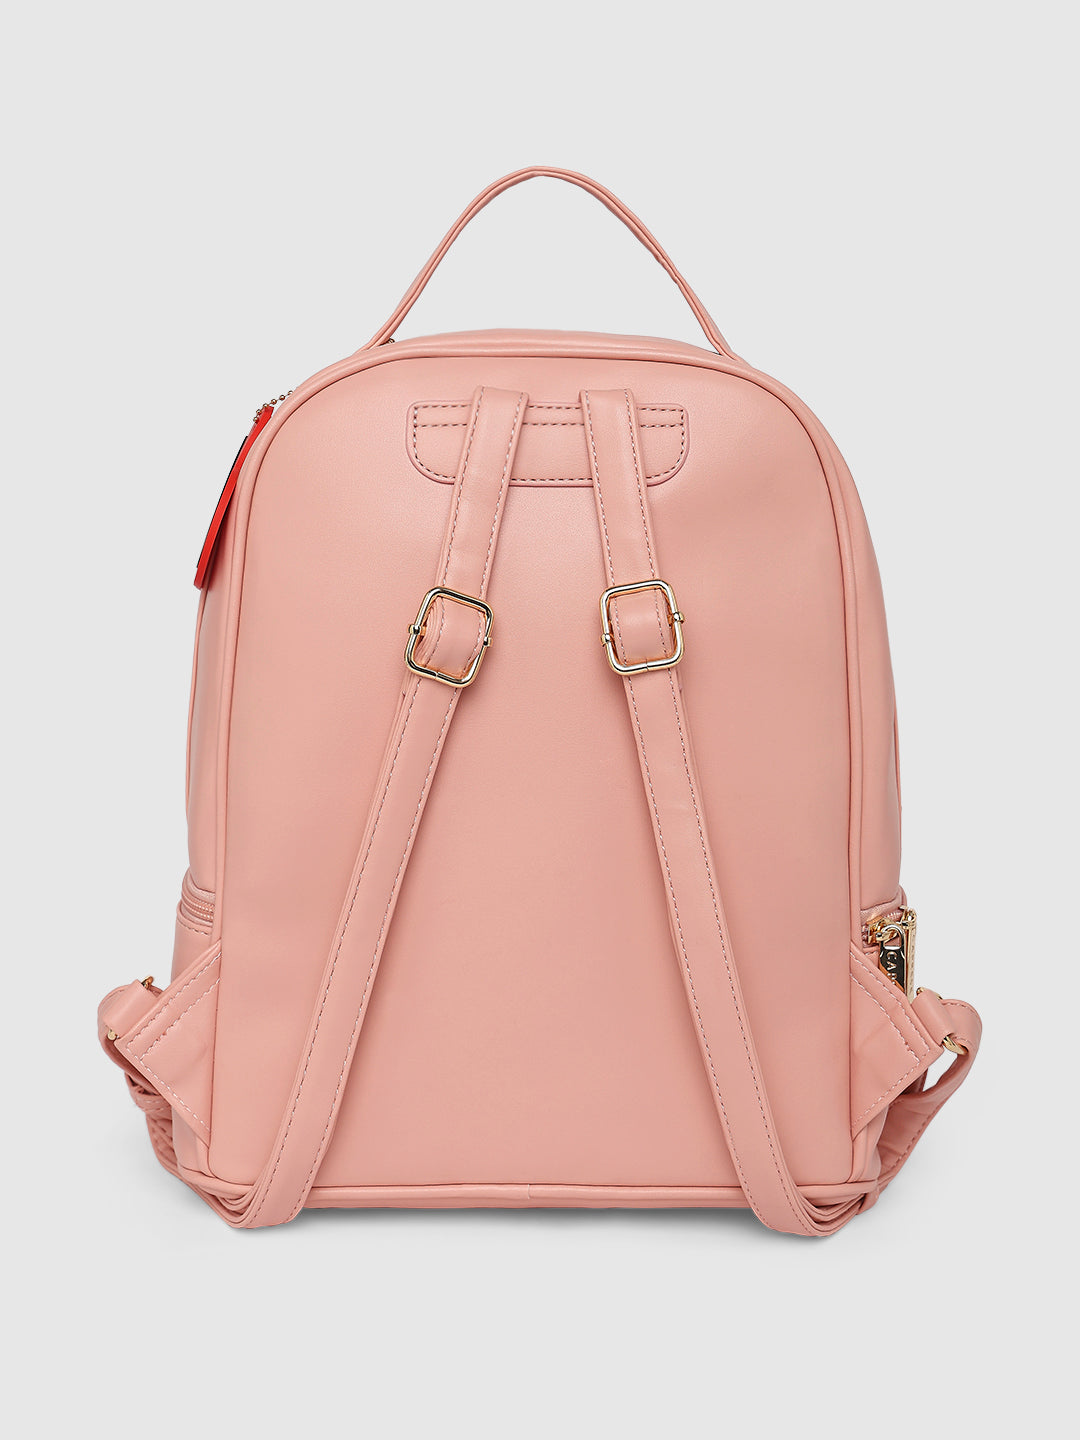 Caprese Emily in Paris Printed Backpack Bag